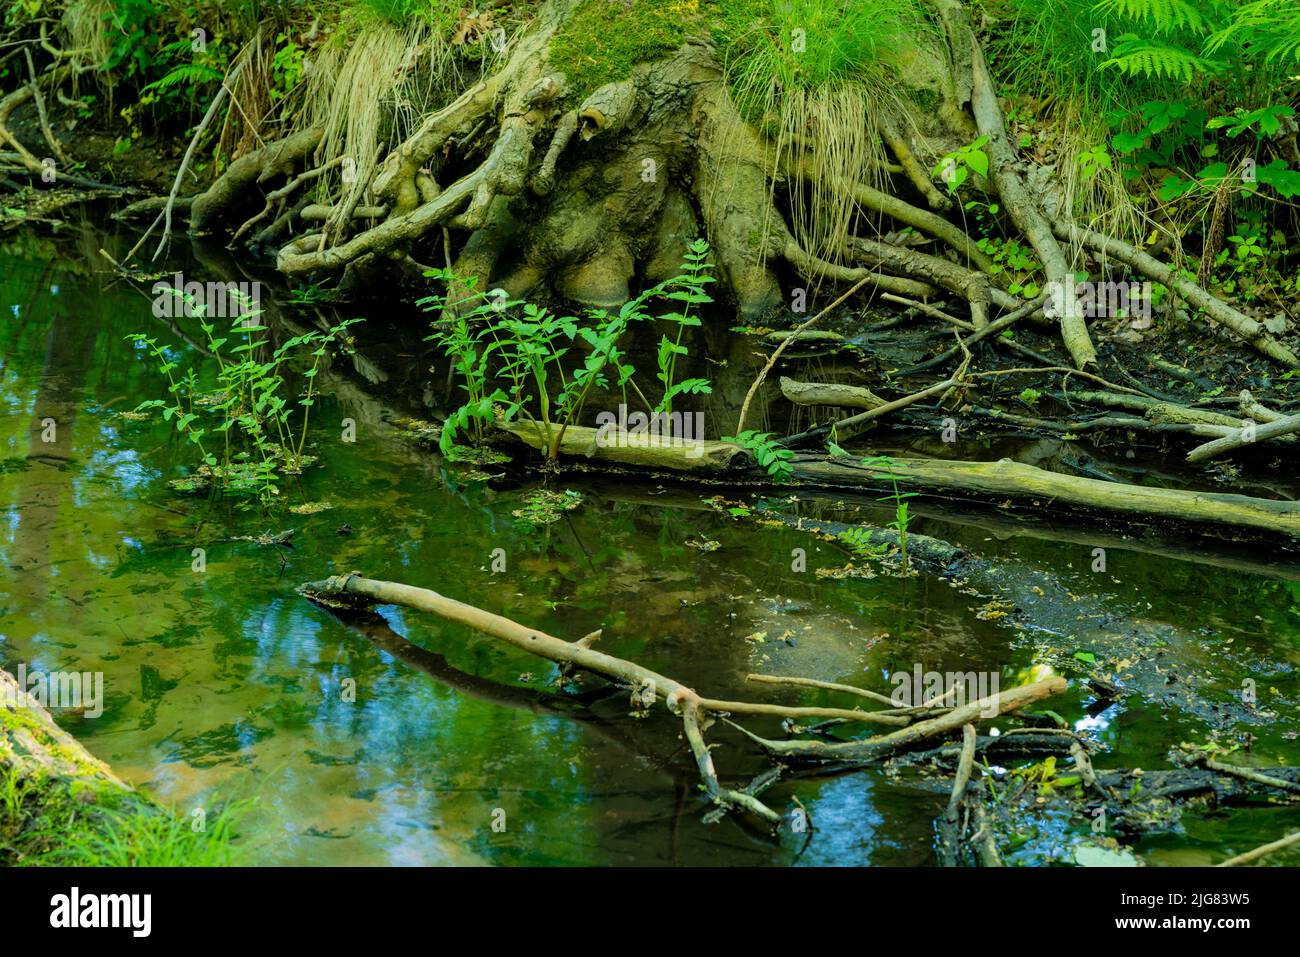 Piccolo fiume nella foresta, scarsità d'acqua a causa di ondate di calore causate dal cambiamento climatico, profondità di campo poco profonda, bokeh morbido Foto Stock